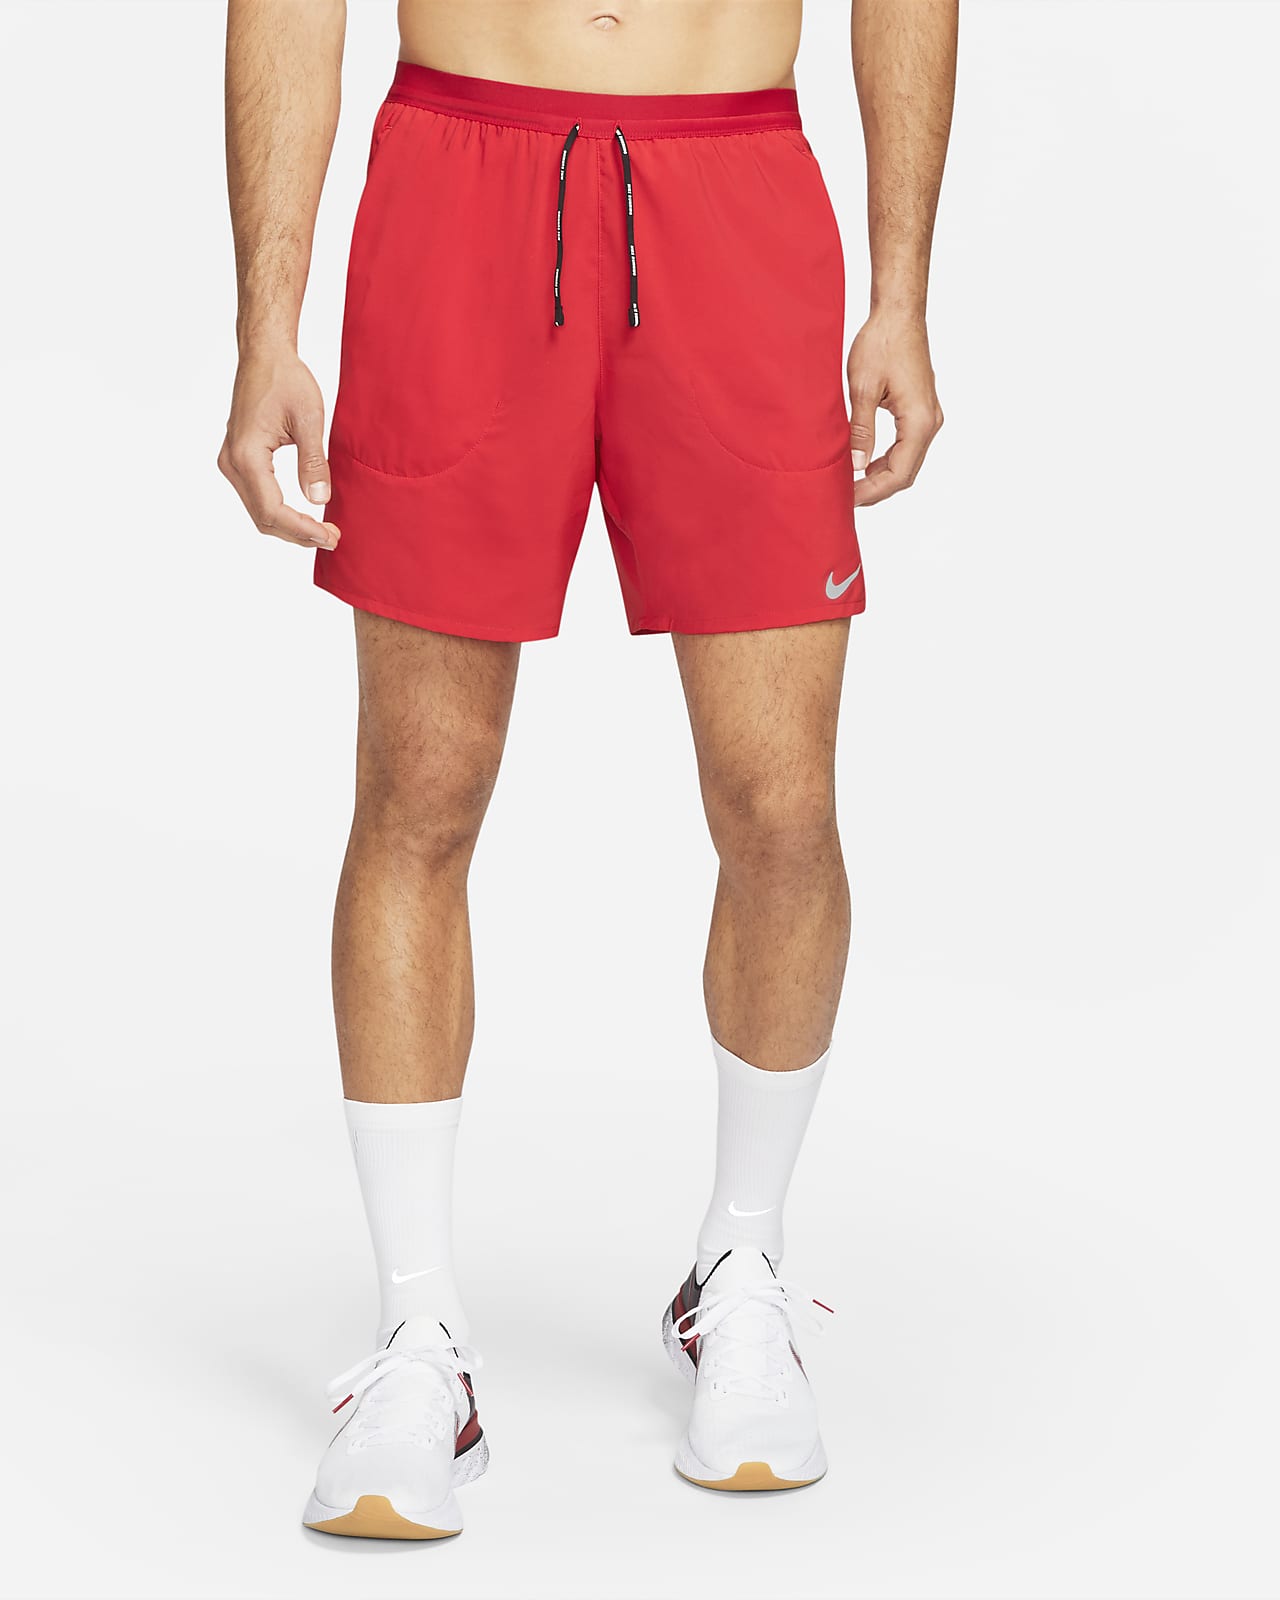 Shorts de con ropa interior 18 cm para hombre Nike Flex Stride. Nike.com